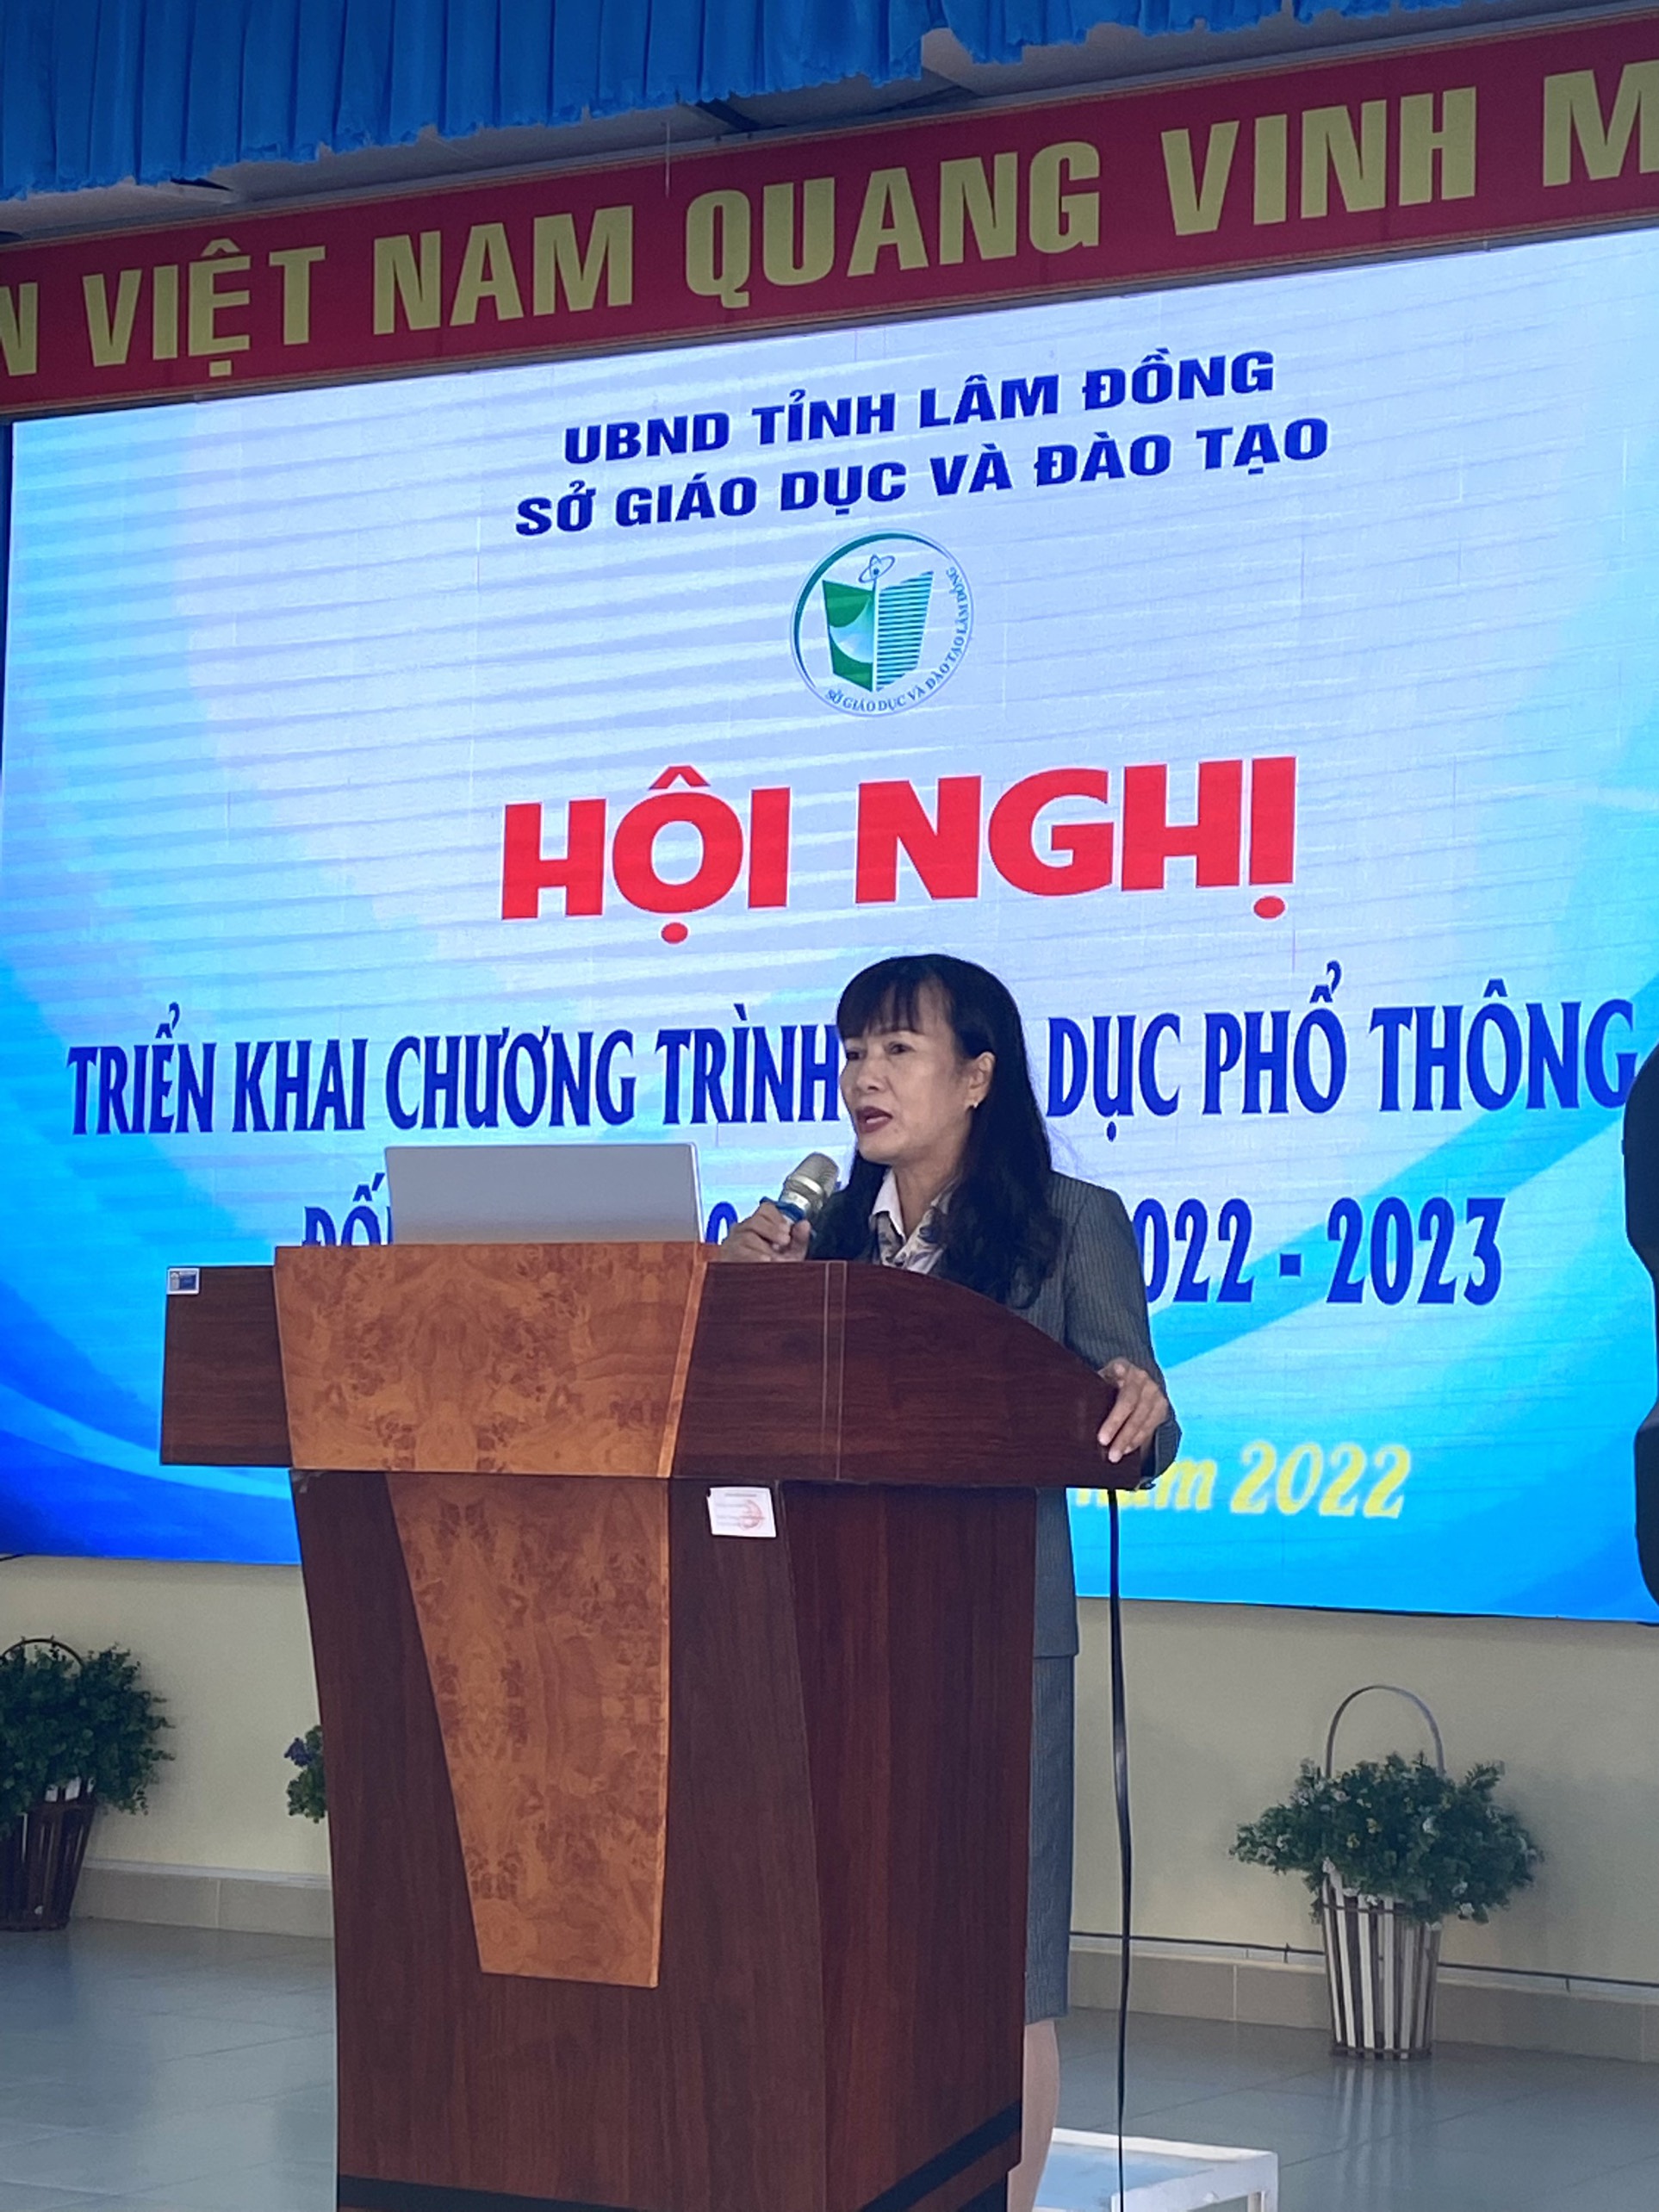 Sở Giáo dục và Đào tạo tỉnh Lâm Đồng tổ chức Hội nghị triển khai Chương trình giáo dục phổ thông 2018 đối với lớp 10 năm học 2022 - 2023